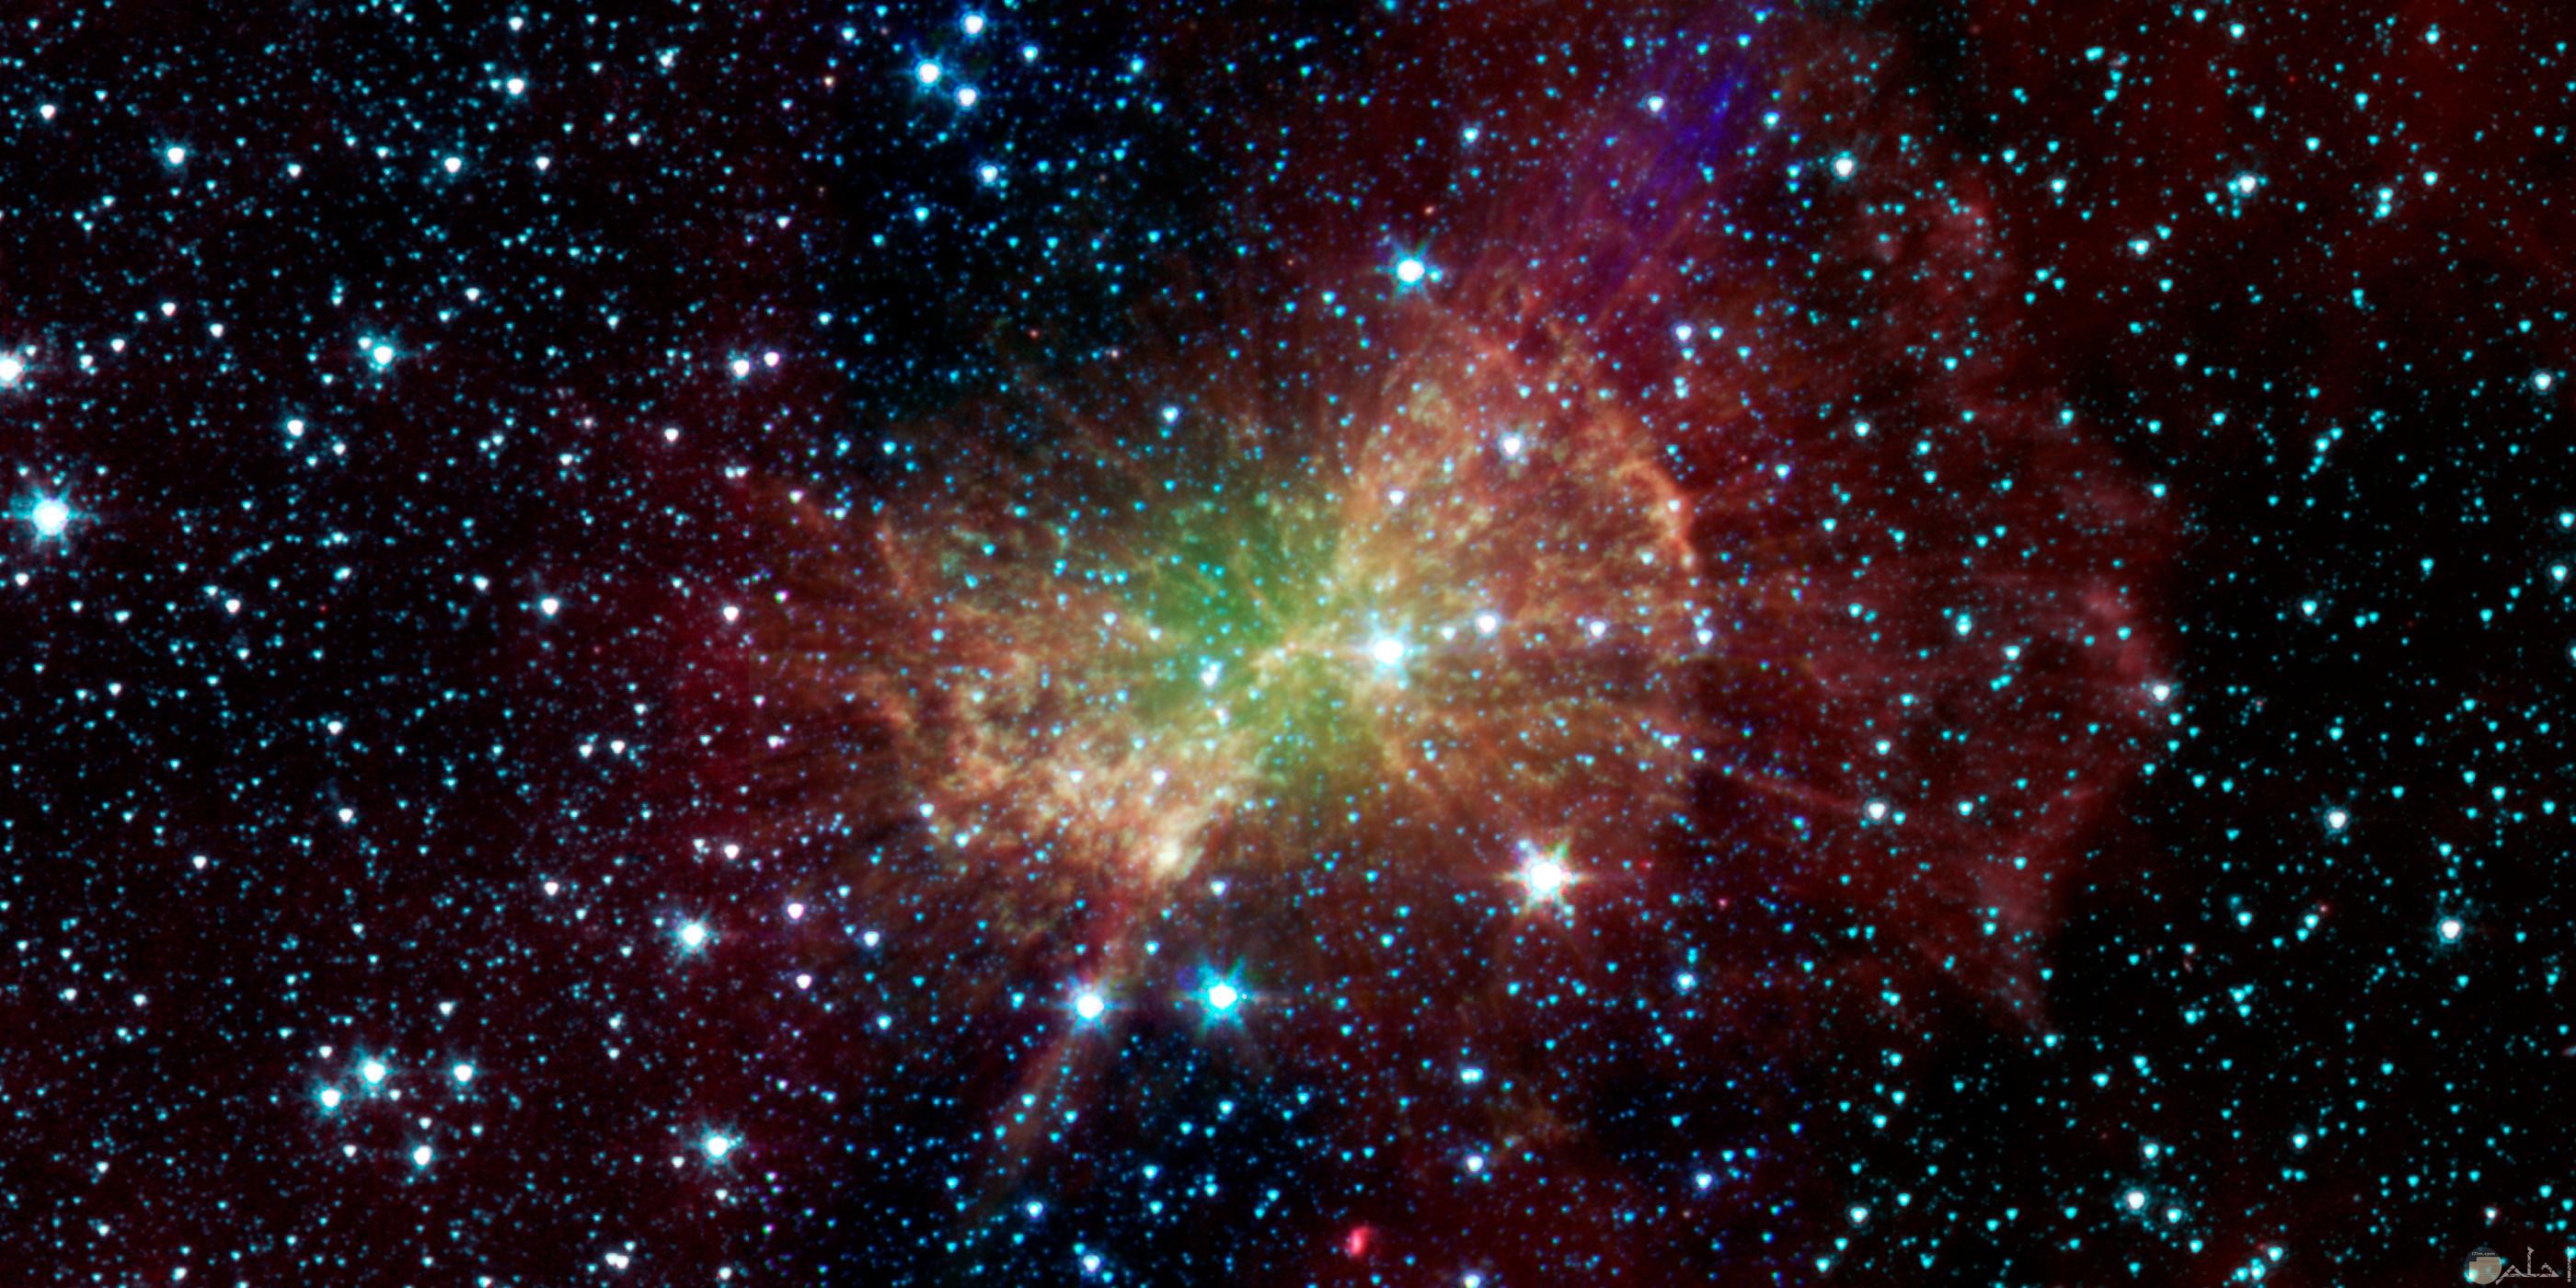 صورة جميلة توضح النجوم مضيئة بشكل كبير في الفضاء